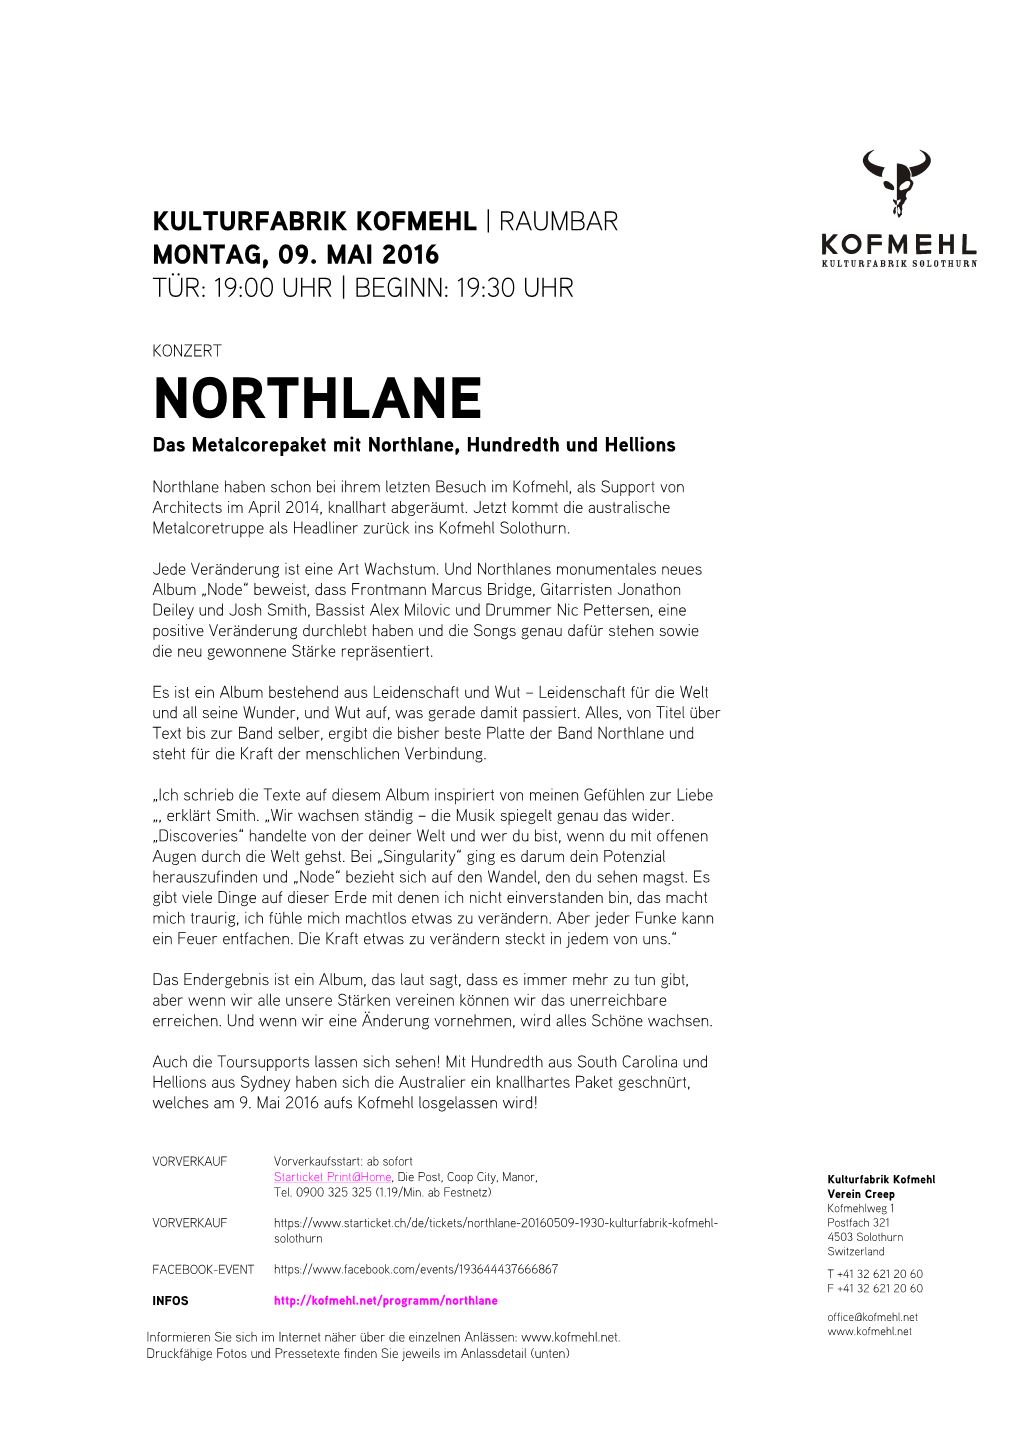 NORTHLANE Das Metalcorepaket Mit Northlane, Hundredth Und Hellions